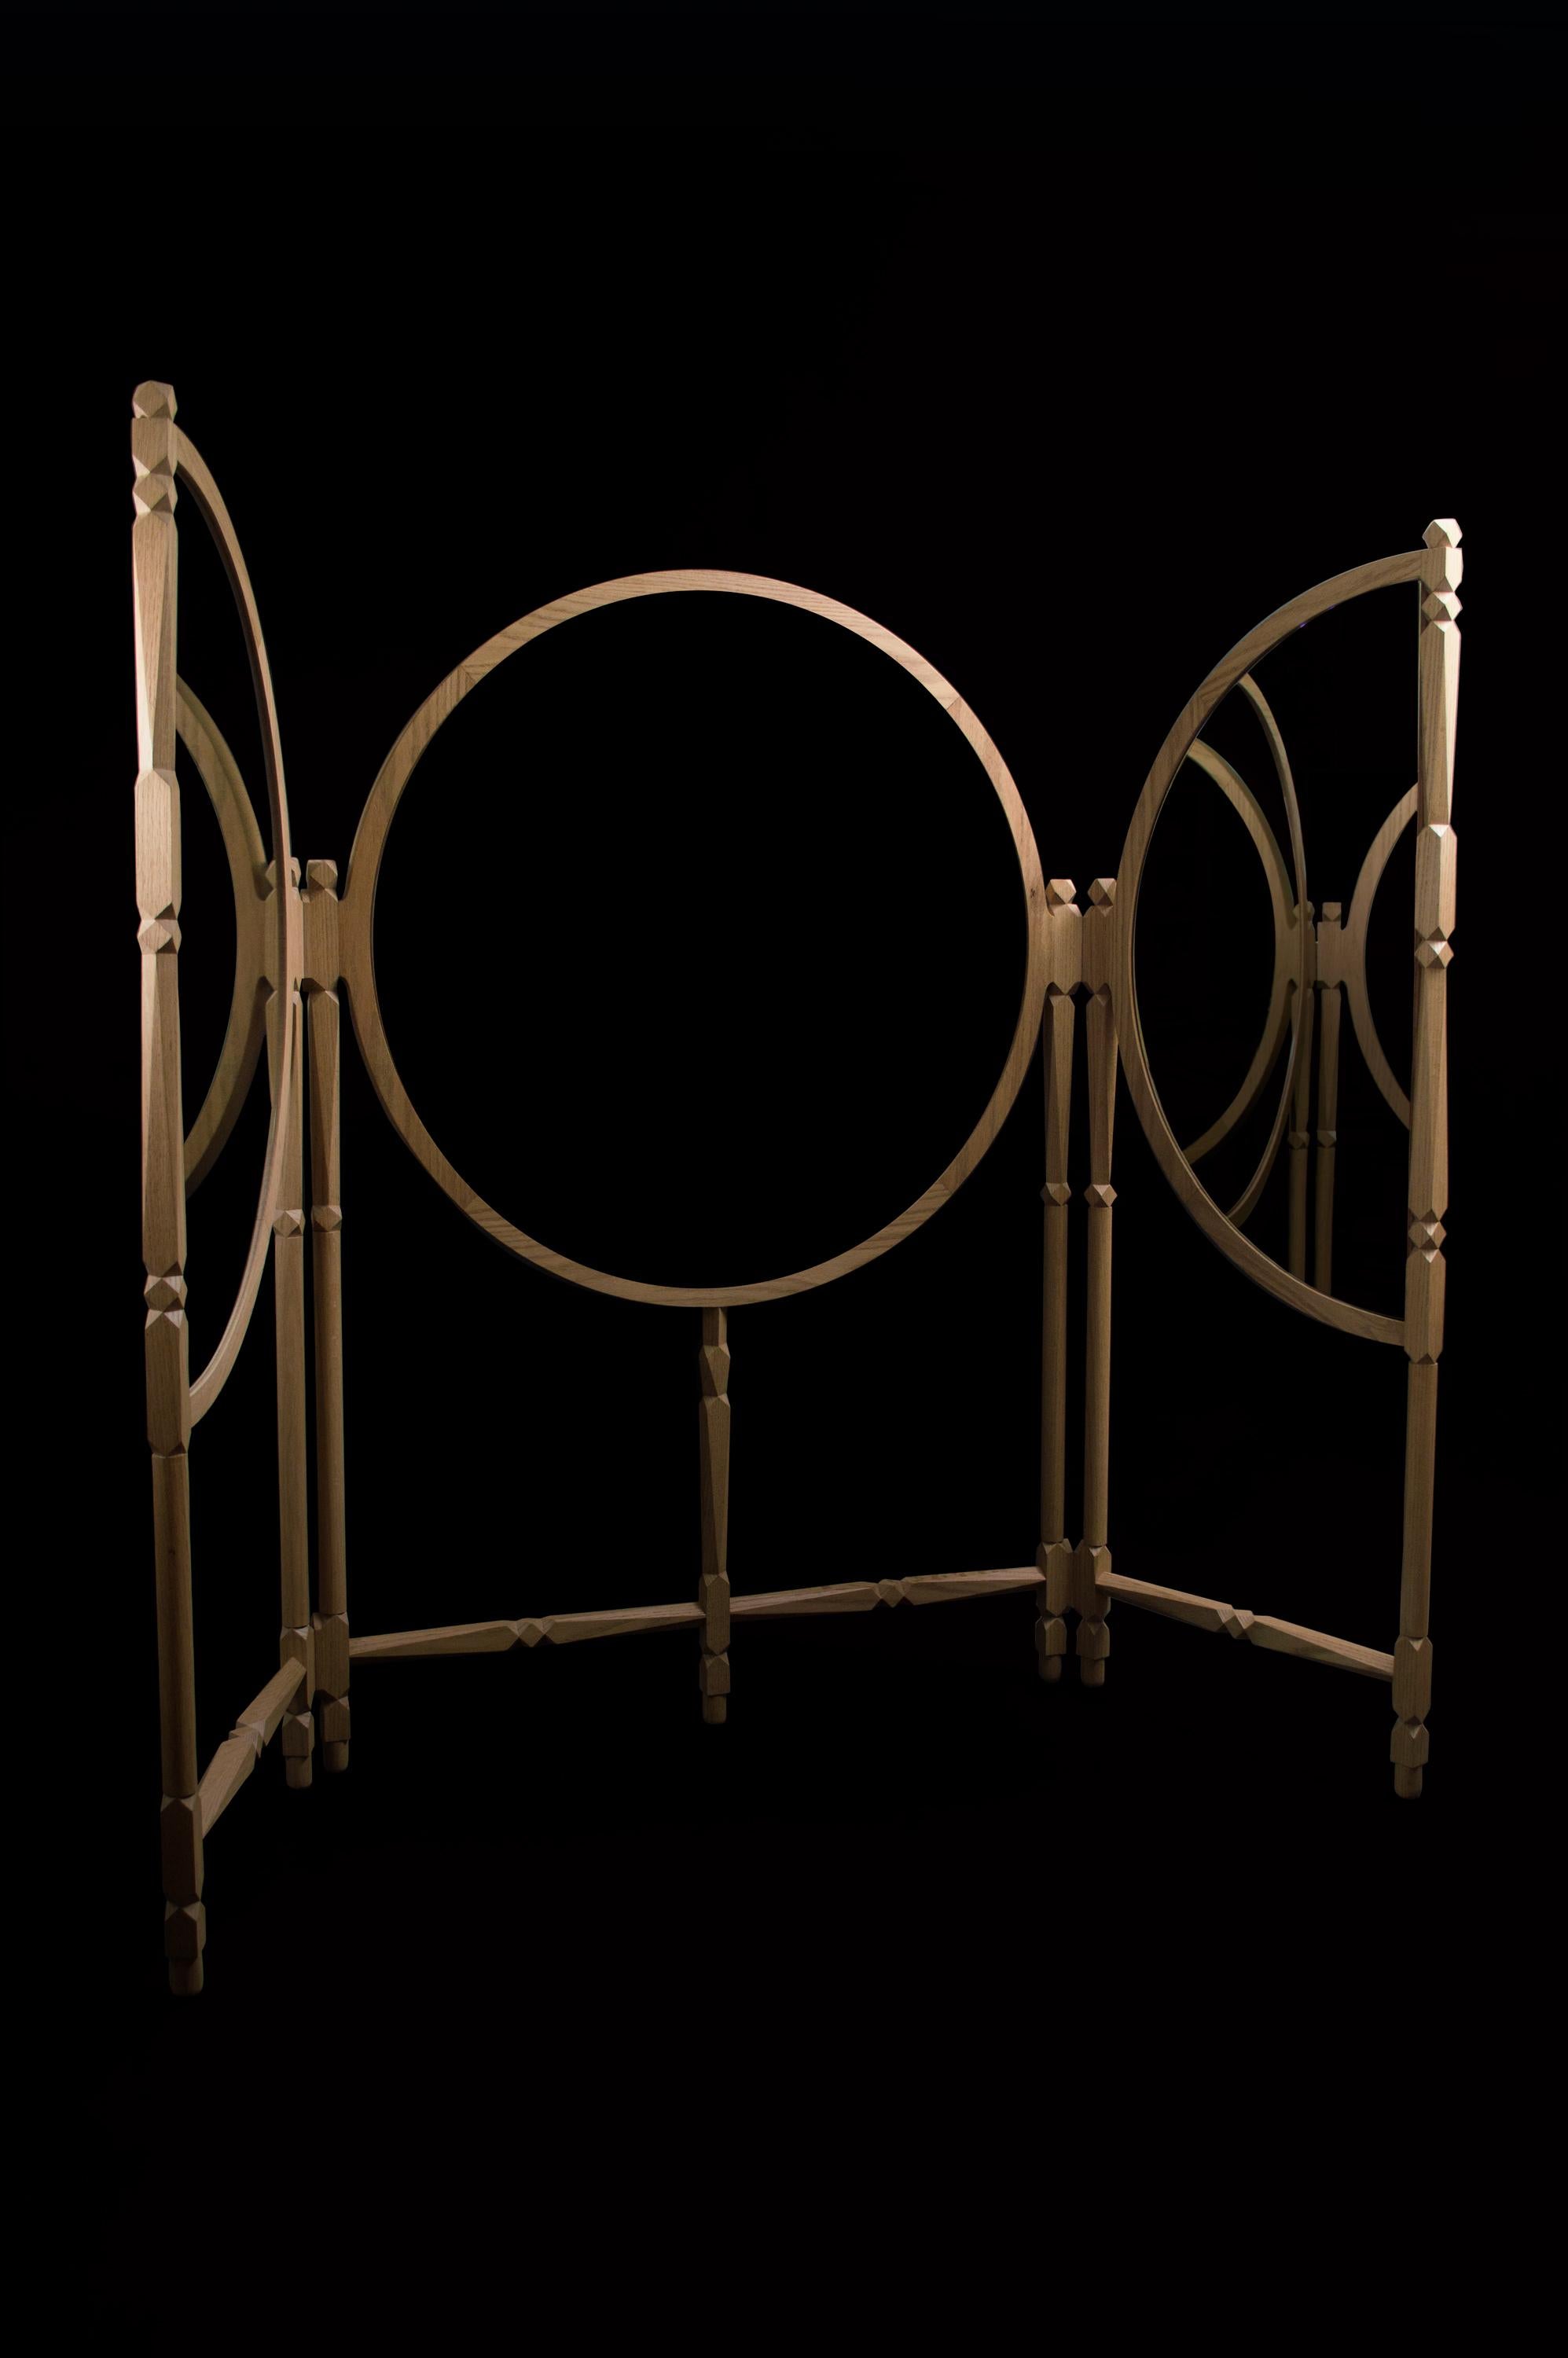 BIOMBO Triptychon von Acoocooro
Abmessungen: B219 x T4 x H144 cm
MATERIALIEN: Spiegel/Trennwand aus massivem Eichenholz; Spiegel aus Naturglas (Vorderseite) und Spiegel aus geräuchertem Kupferglas (Rückseite); dekorative Akzente aus Messing.

Biombo